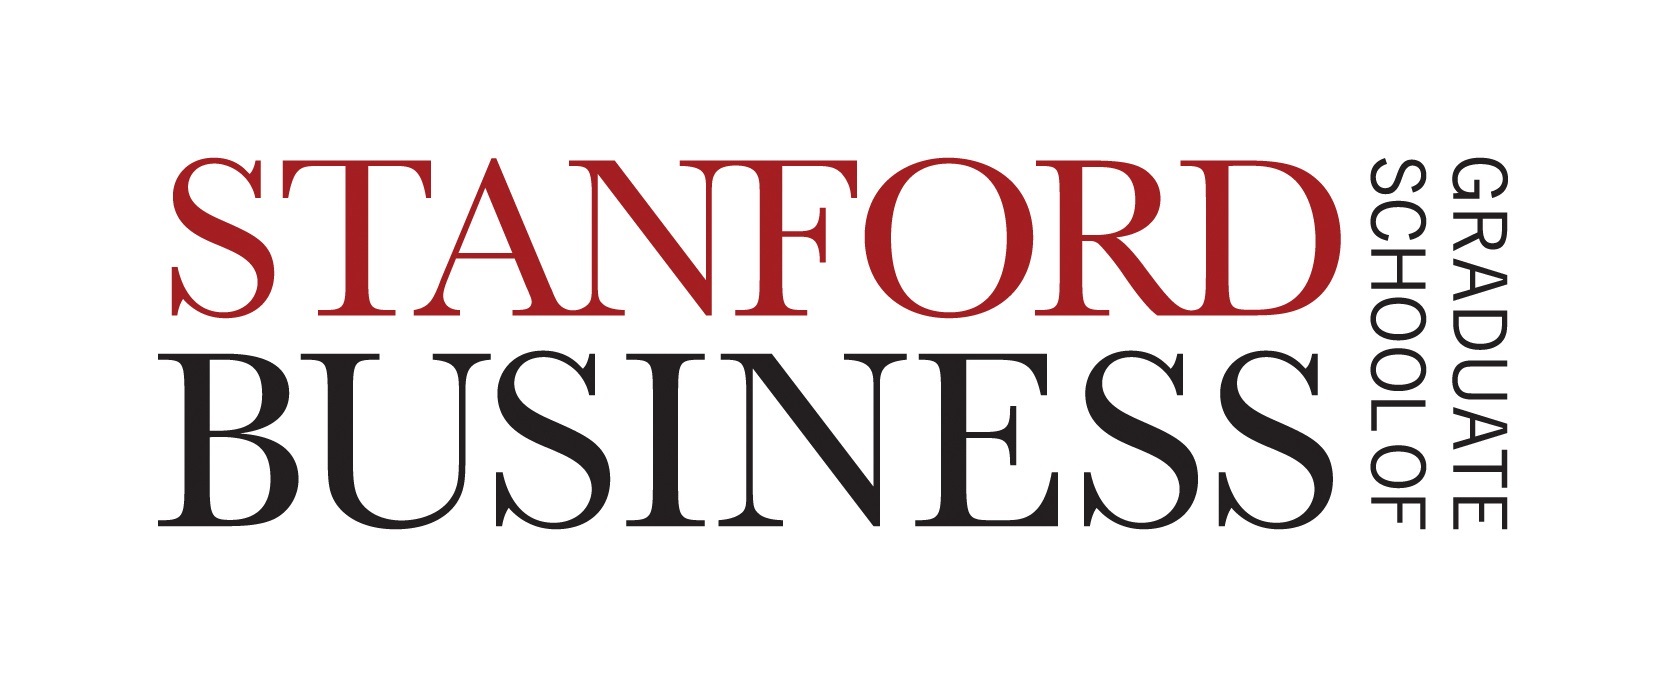 كلية الدراسات العليا في إدارة الأعمال في جامعة ستانفورد تطلق ستانفورد إمبارك، حزمة أدوات جديدة عبر الإنترنت لروّاد الأعمال في جميع أنحاء العالم